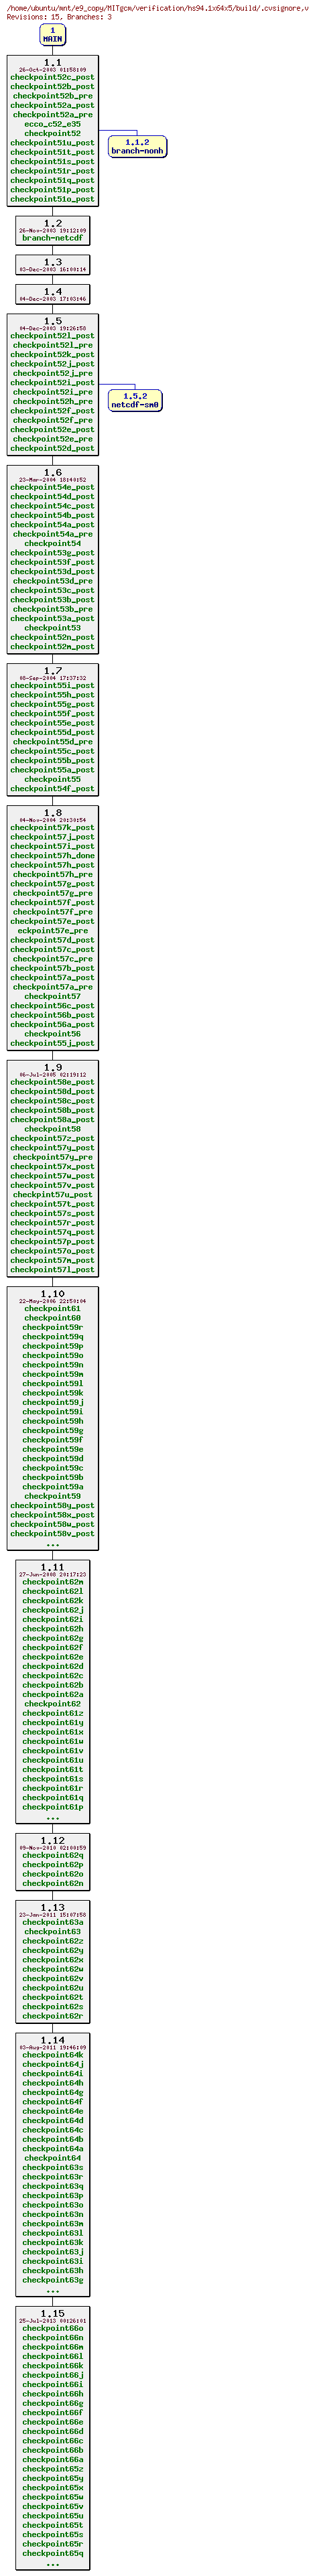 Revisions of MITgcm/verification/hs94.1x64x5/build/.cvsignore